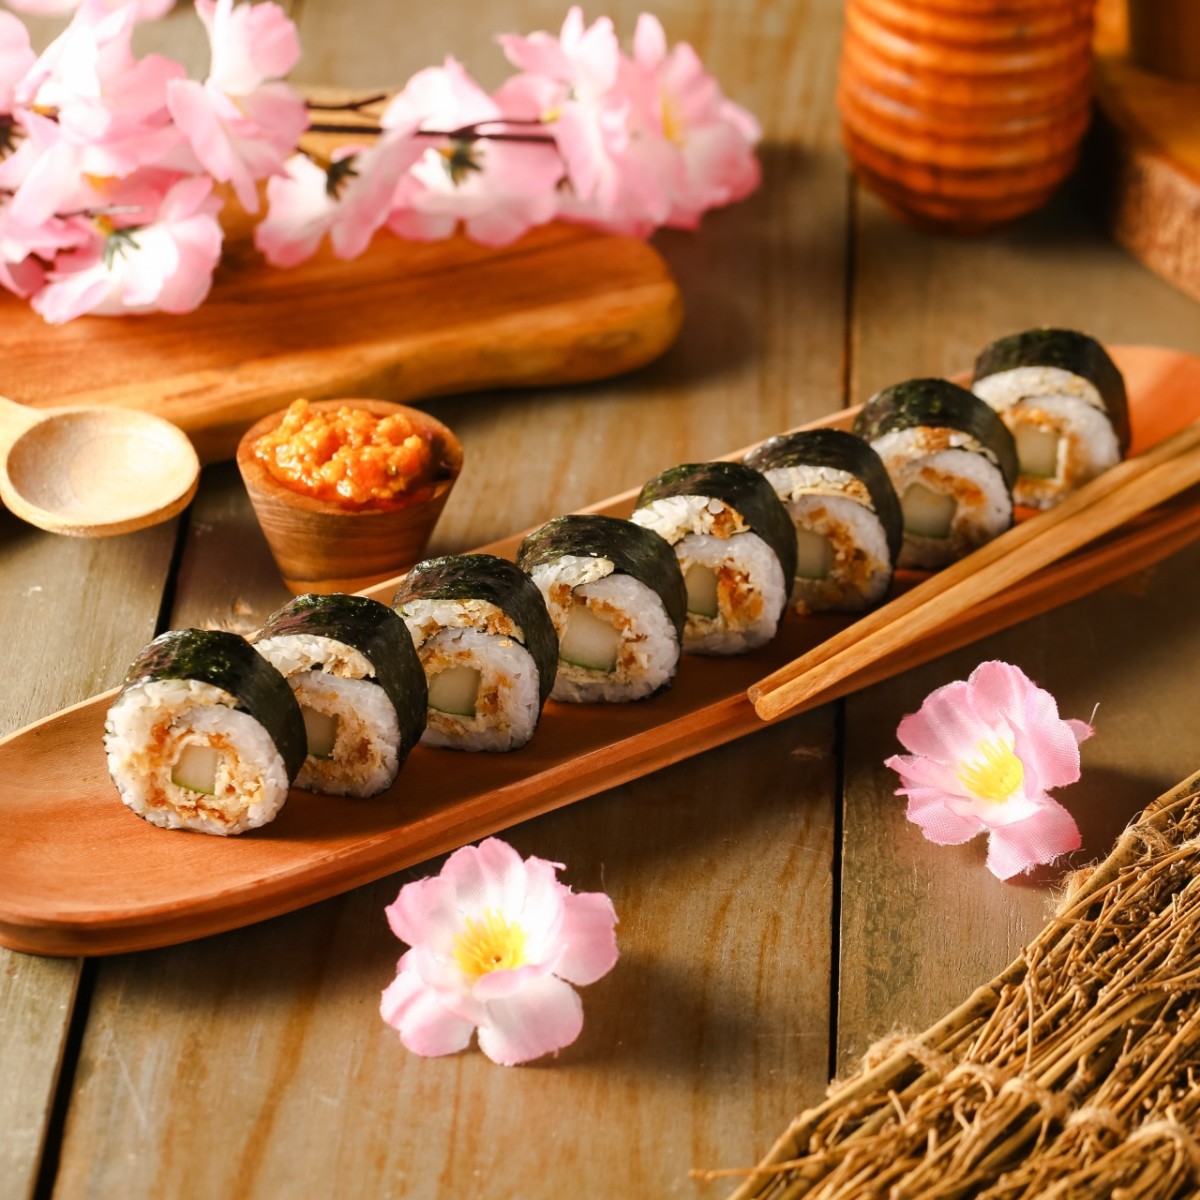 2. Sushi Geprek